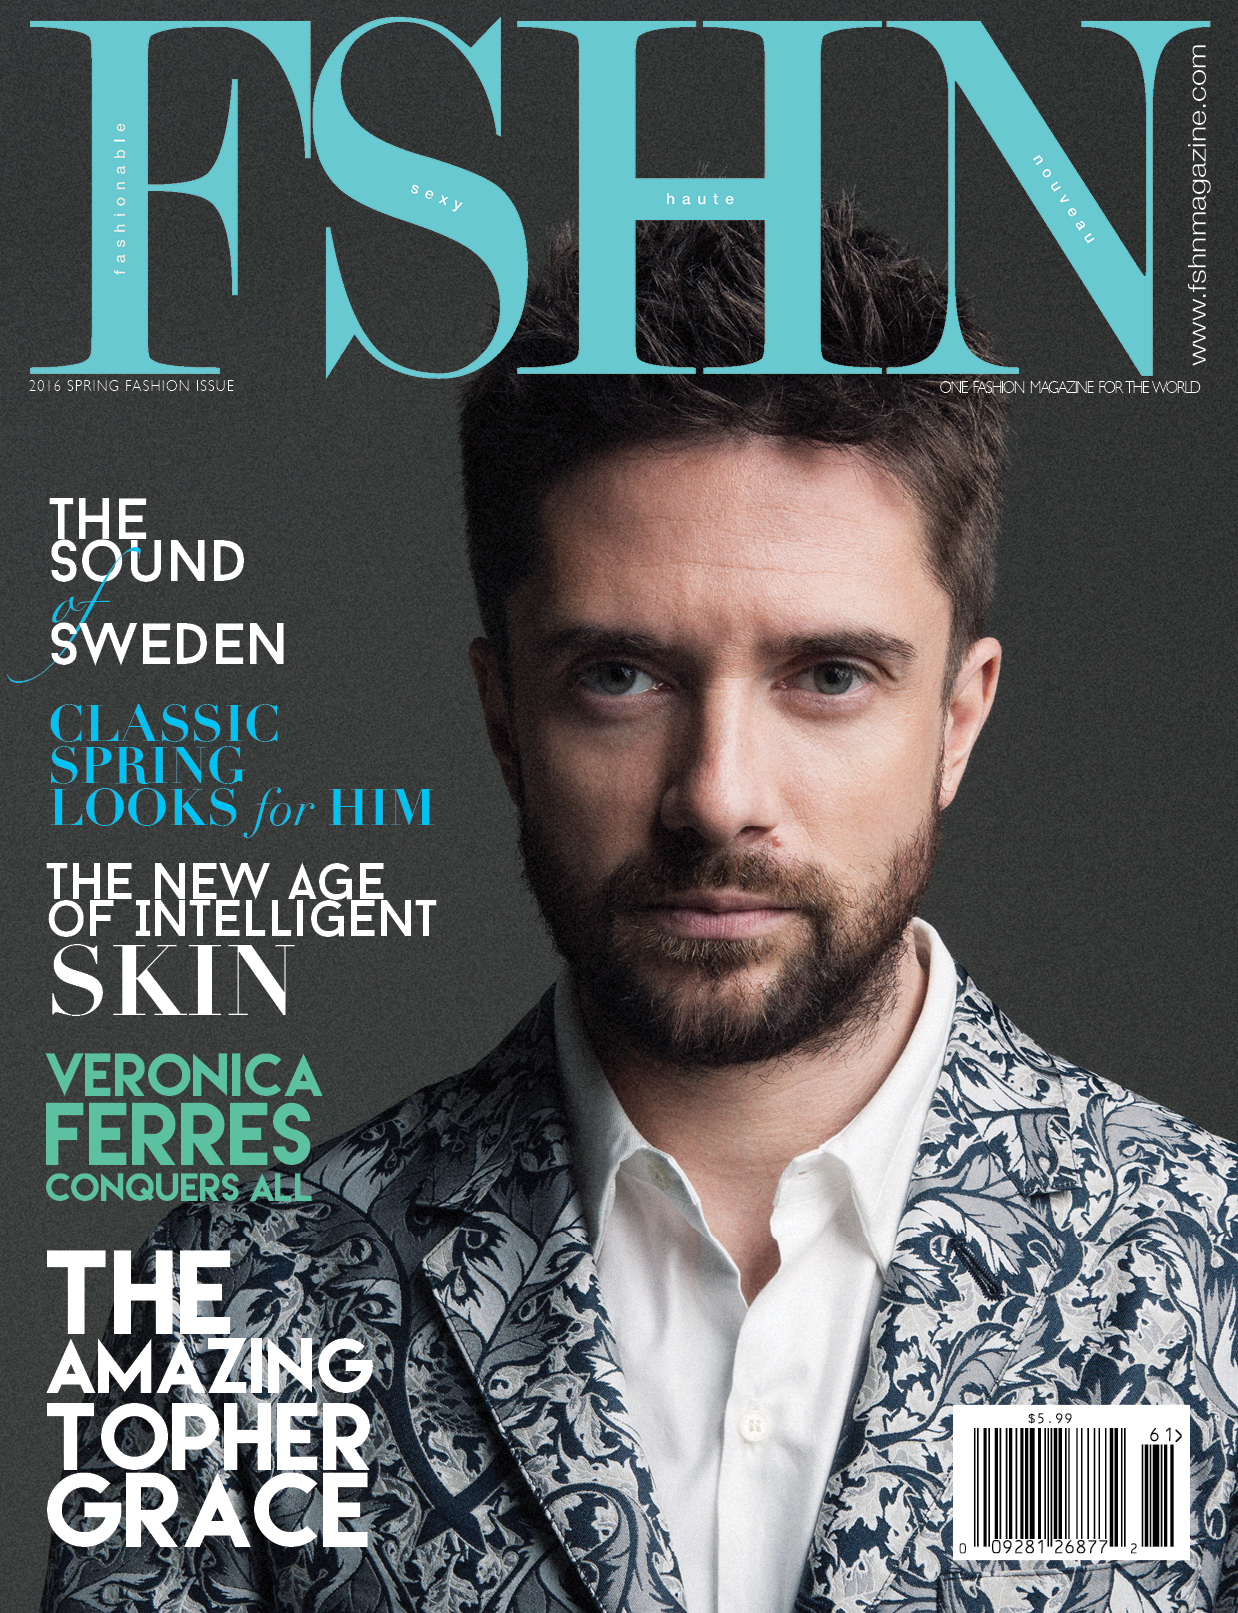 FSHN - 2016 Spring Fashion Issue